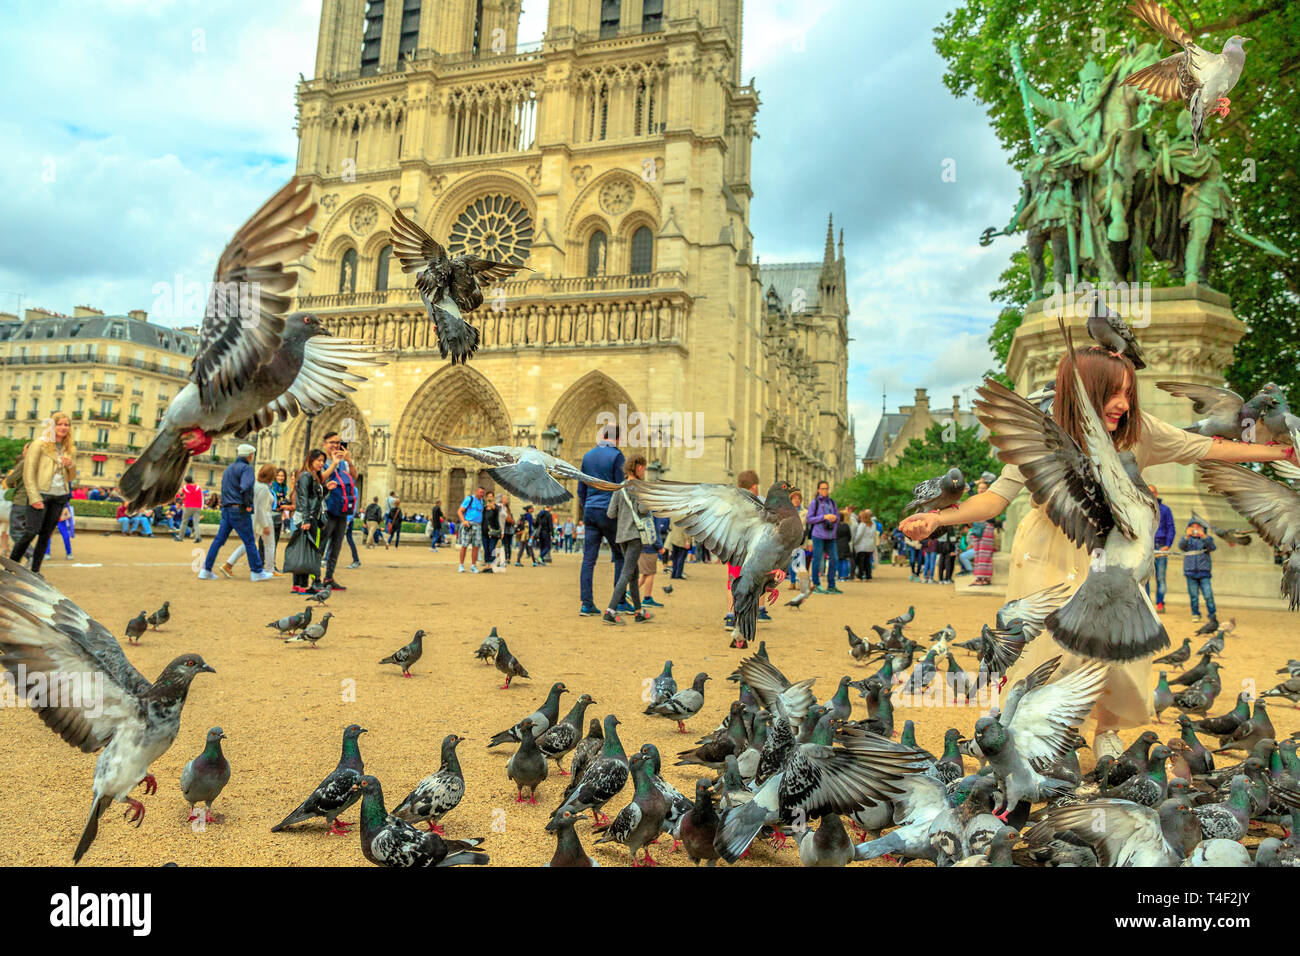 Parigi, Francia - luglio 1, 2017: i piccioni di Notre Dame square. il turista a godere di Parigi. Una popolare destinazione turistica nella capitale francese. La cattedrale sulla Foto Stock